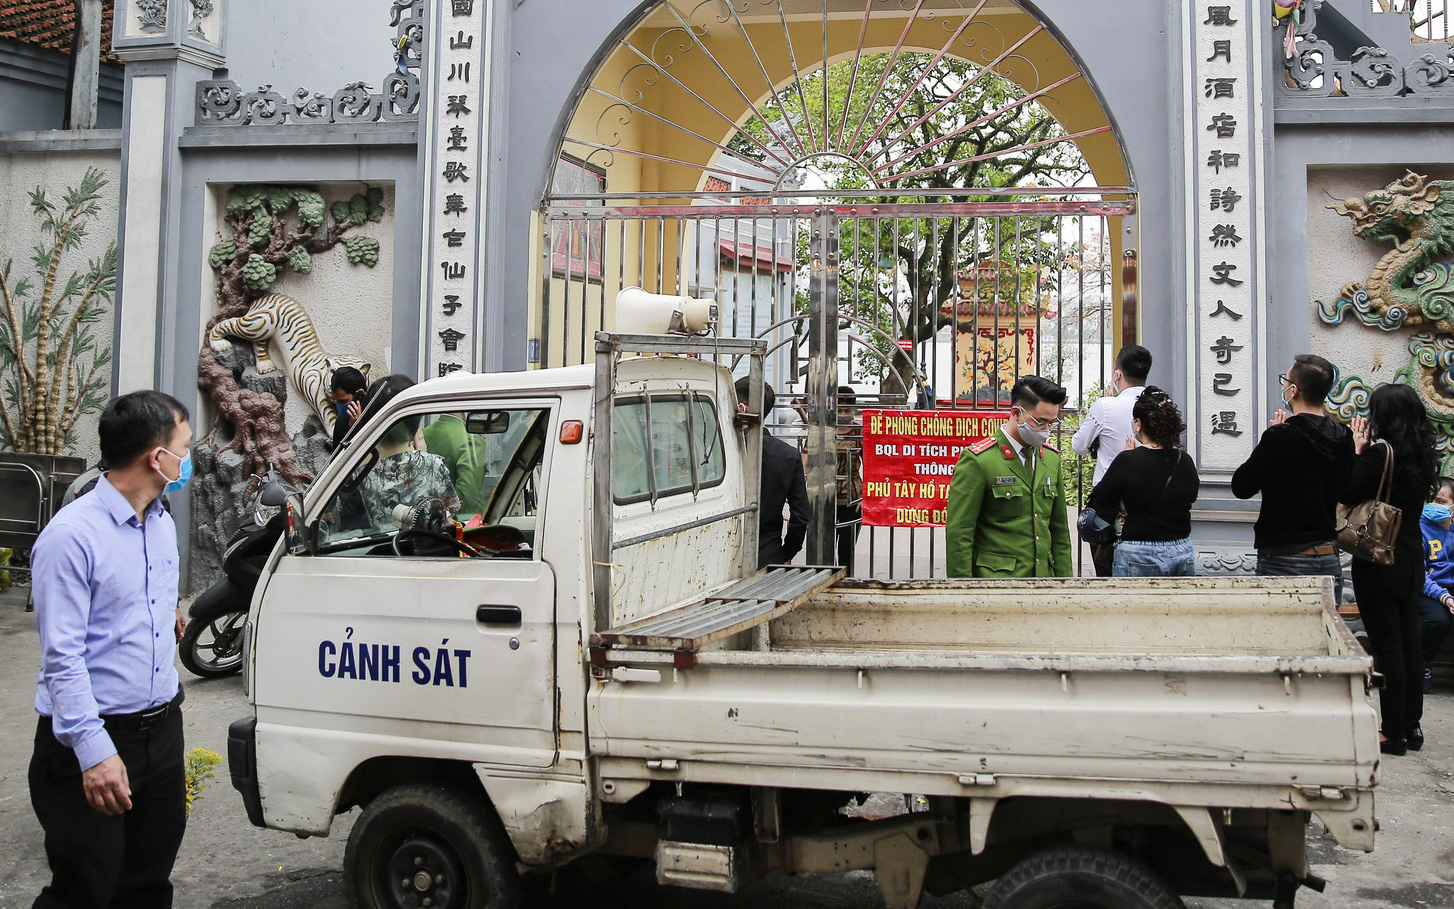 Hà Nội: Công an gác cổng, người dân lập bàn lễ và vái vọng trước cổng đền chùa 